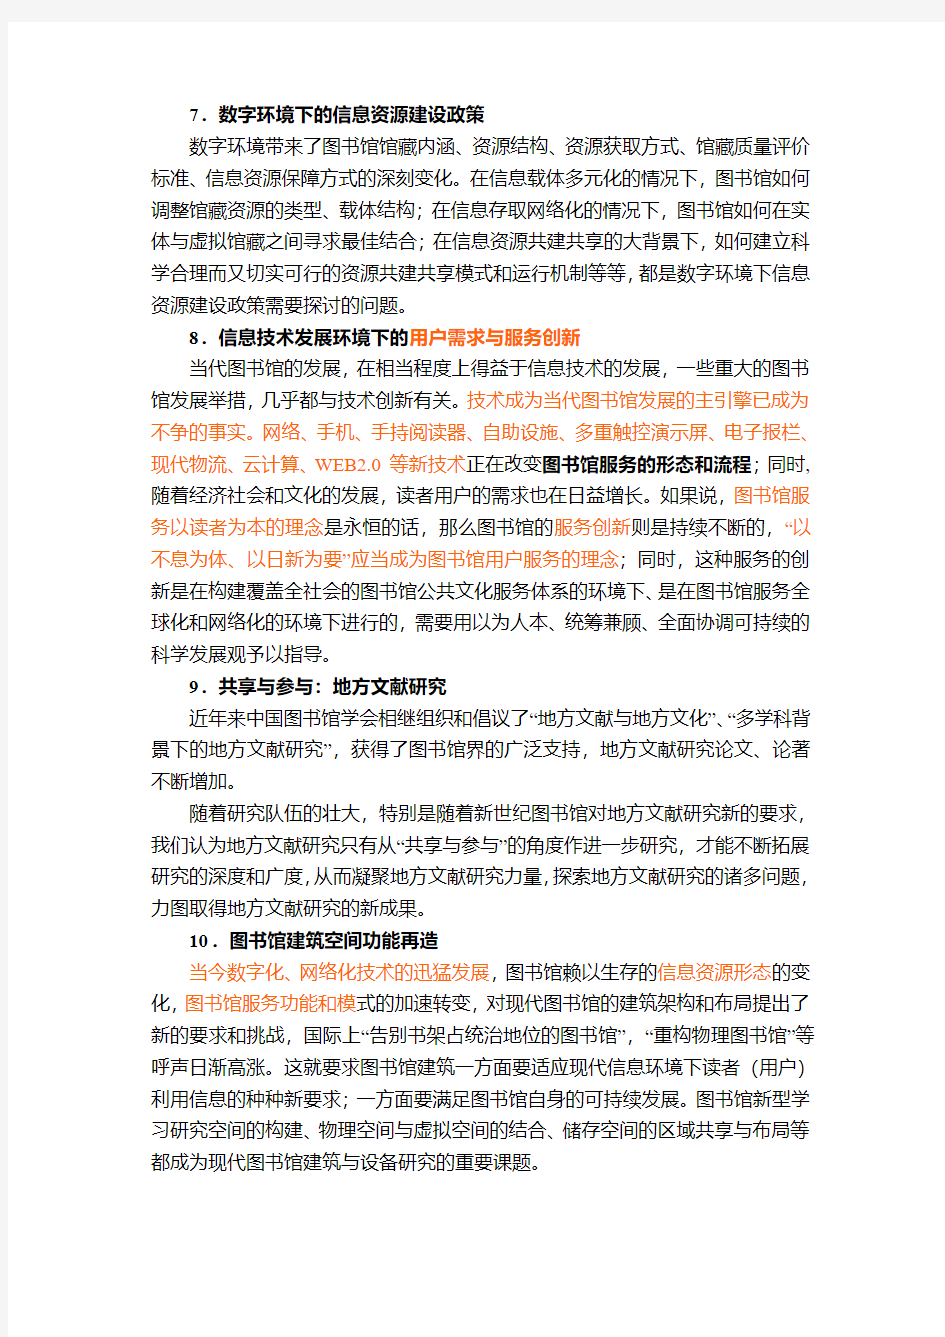 2010中国图书馆学会年会征文通知附件